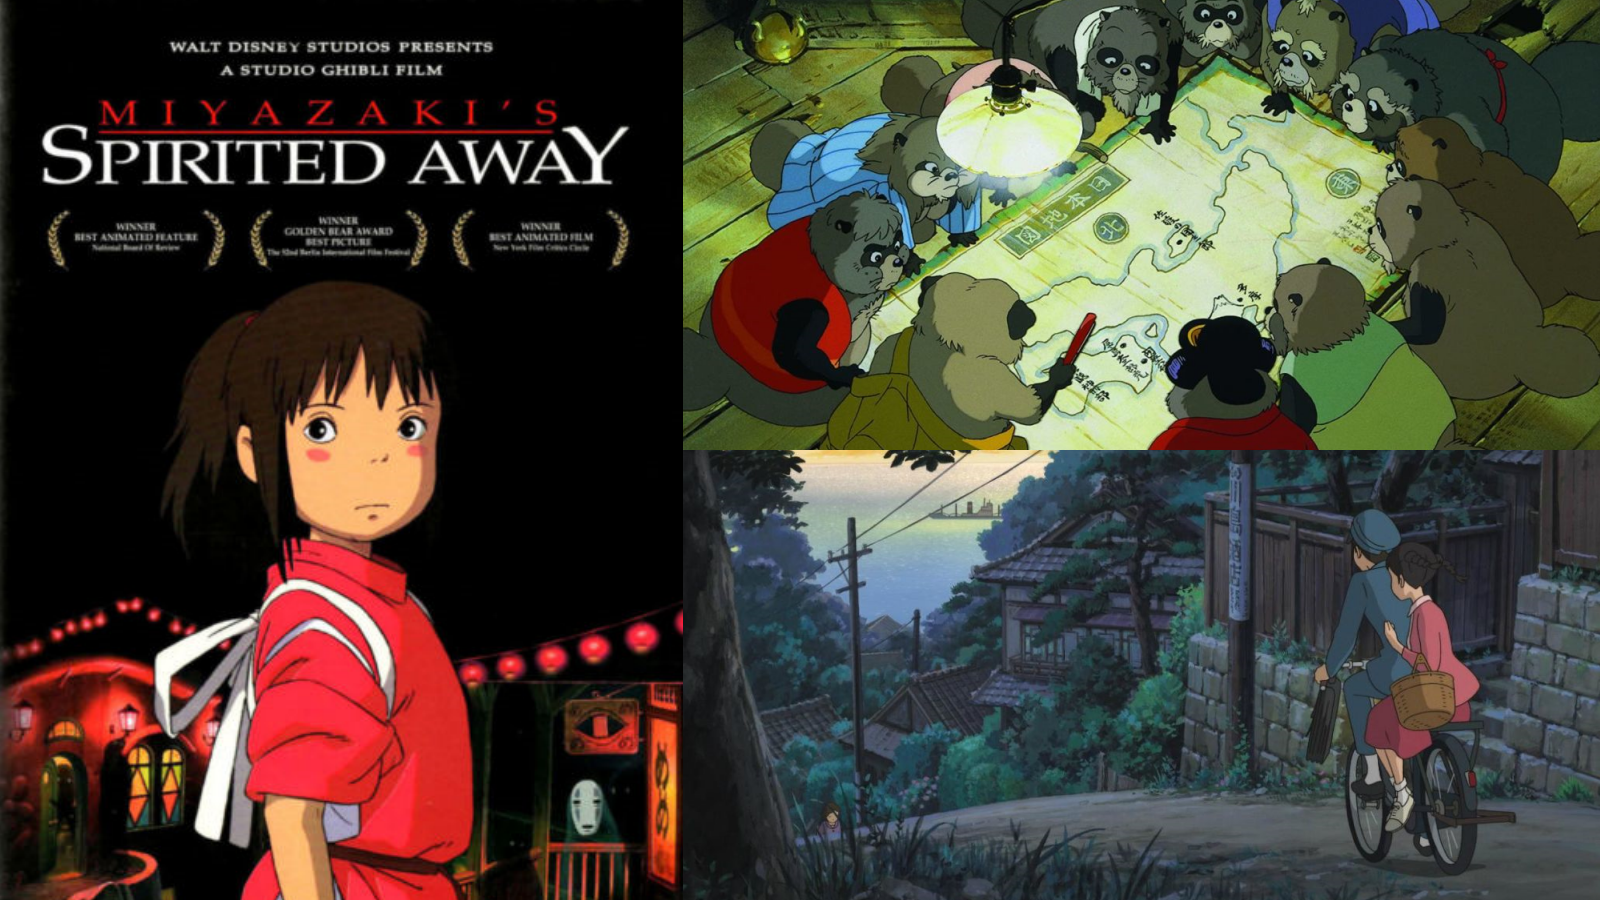 5 Rekomendasi Anime Ghibli Yang Bikin Sedih, Cocok buat Temenin Ngabuburit Kamu yang Hampa